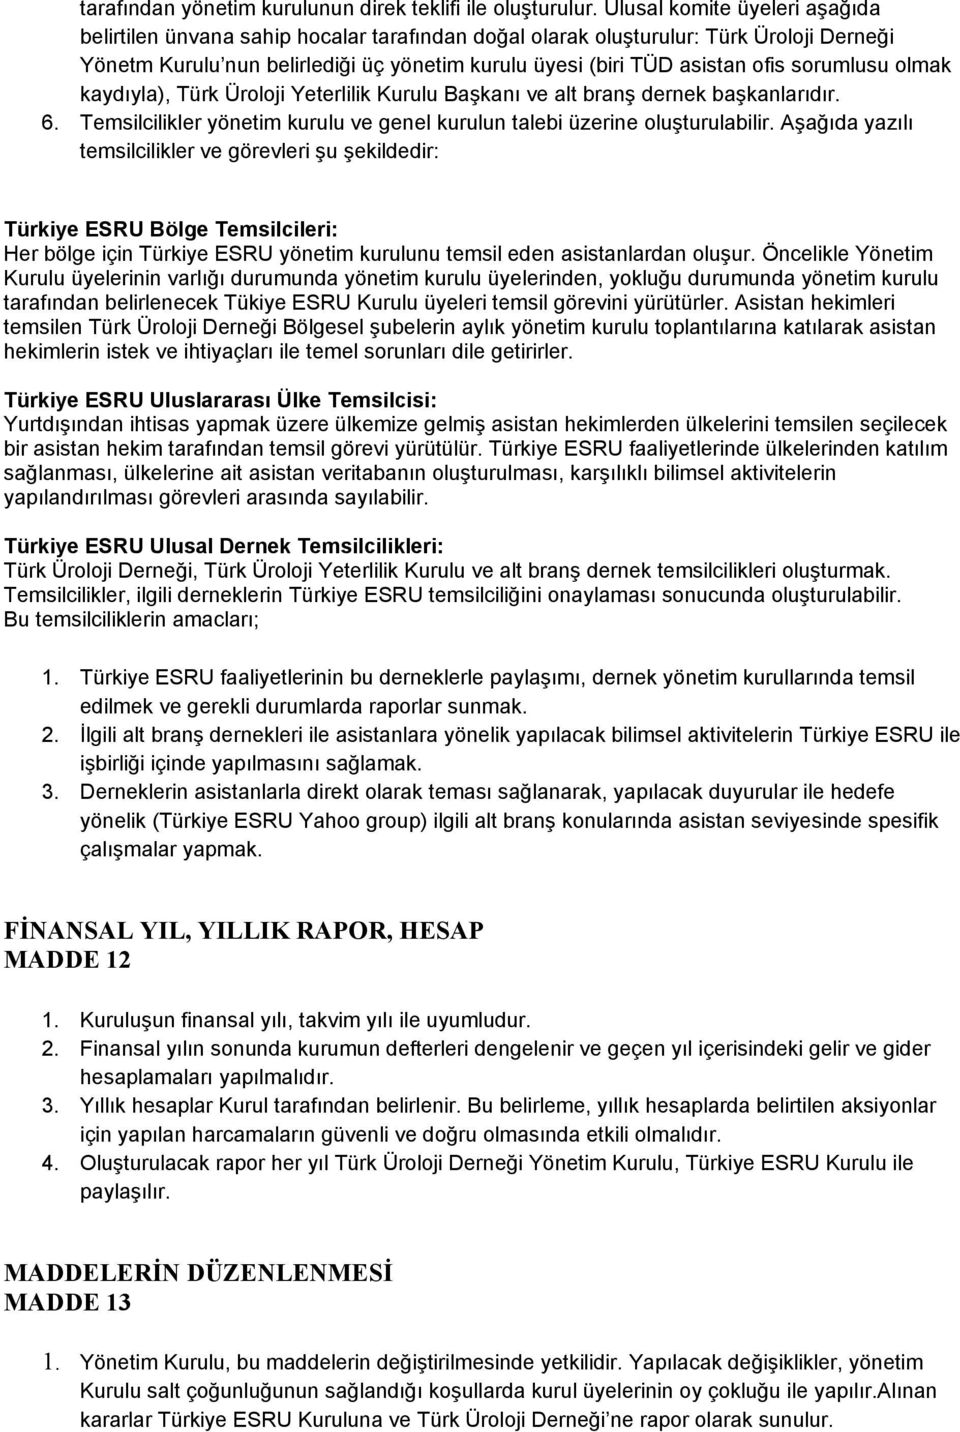 sorumlusu olmak kaydıyla), Türk Üroloji Yeterlilik Kurulu Başkanı ve alt branş dernek başkanlarıdır. 6. Temsilcilikler yönetim kurulu ve genel kurulun talebi üzerine oluşturulabilir.